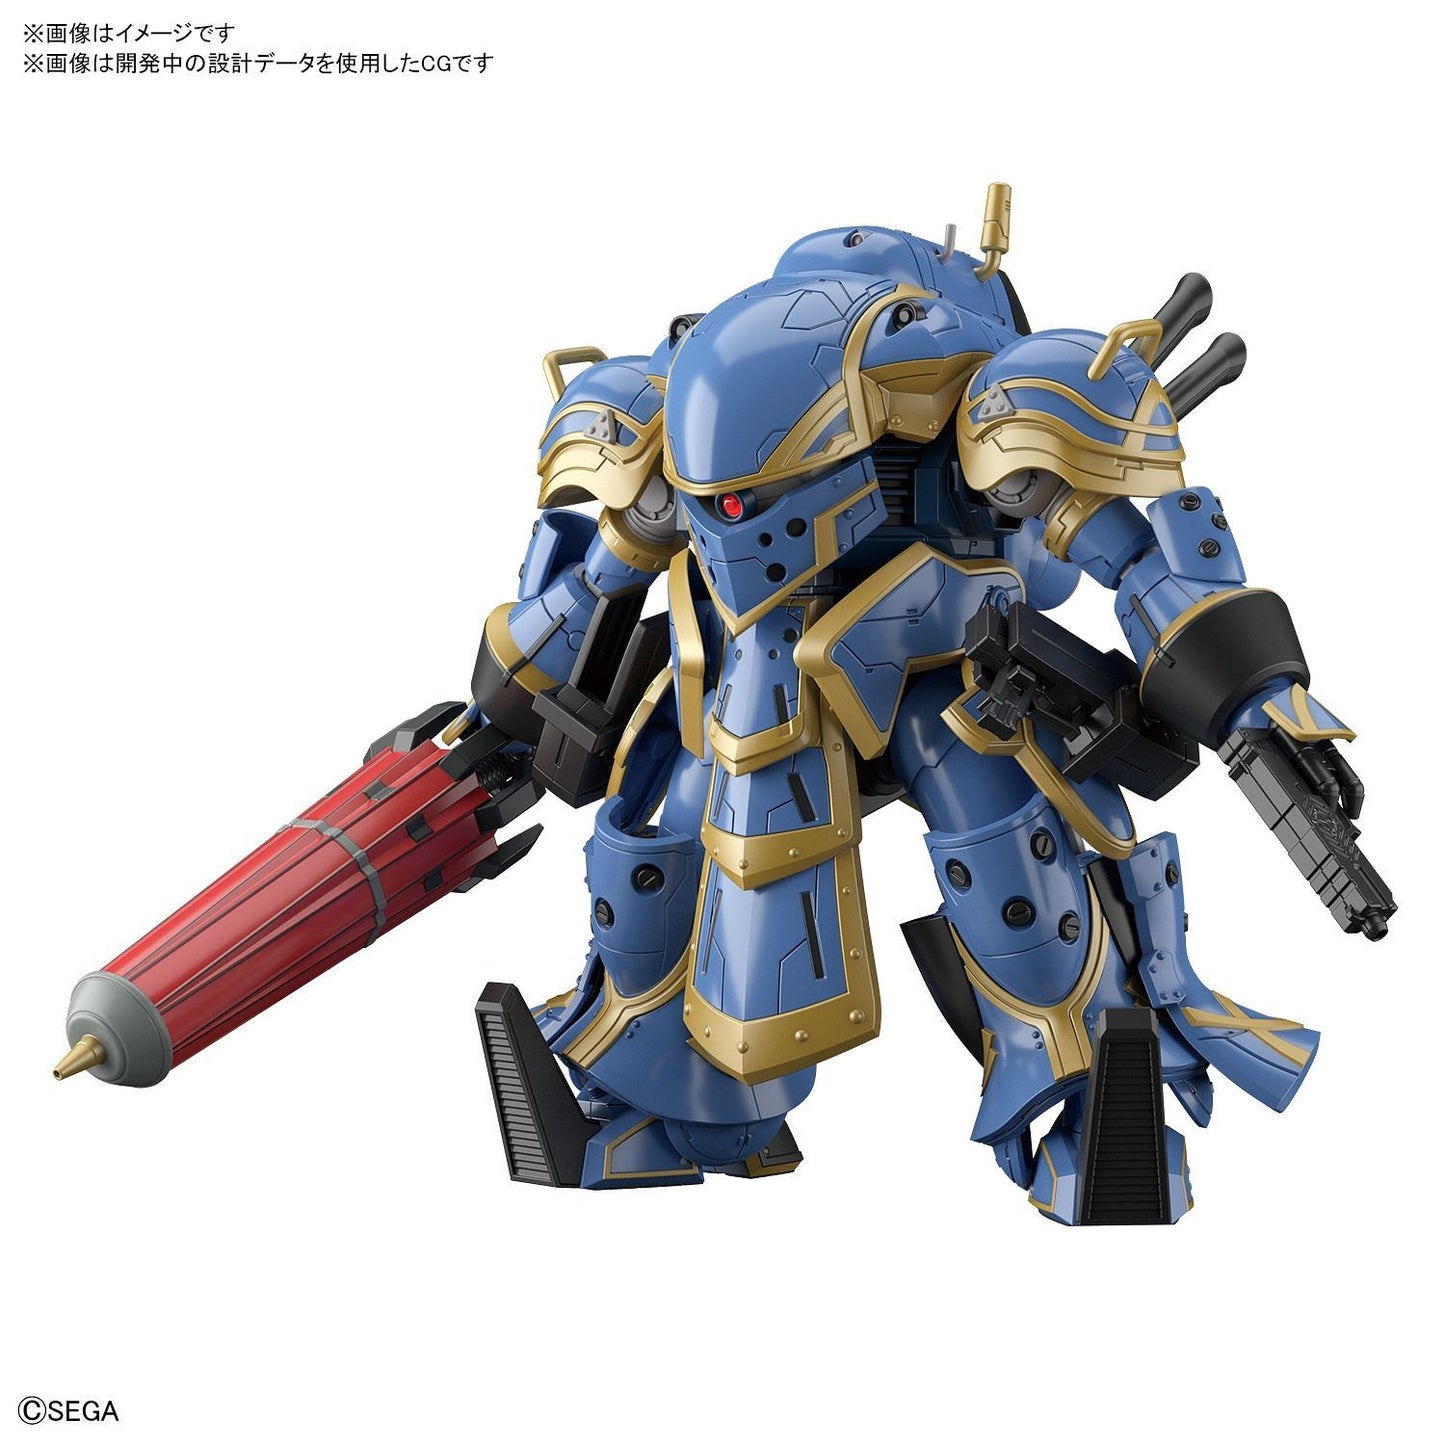 Sakura Wars - Spiricle Striker Mugen - (Anastasia Palma) 1/24 Model Kit